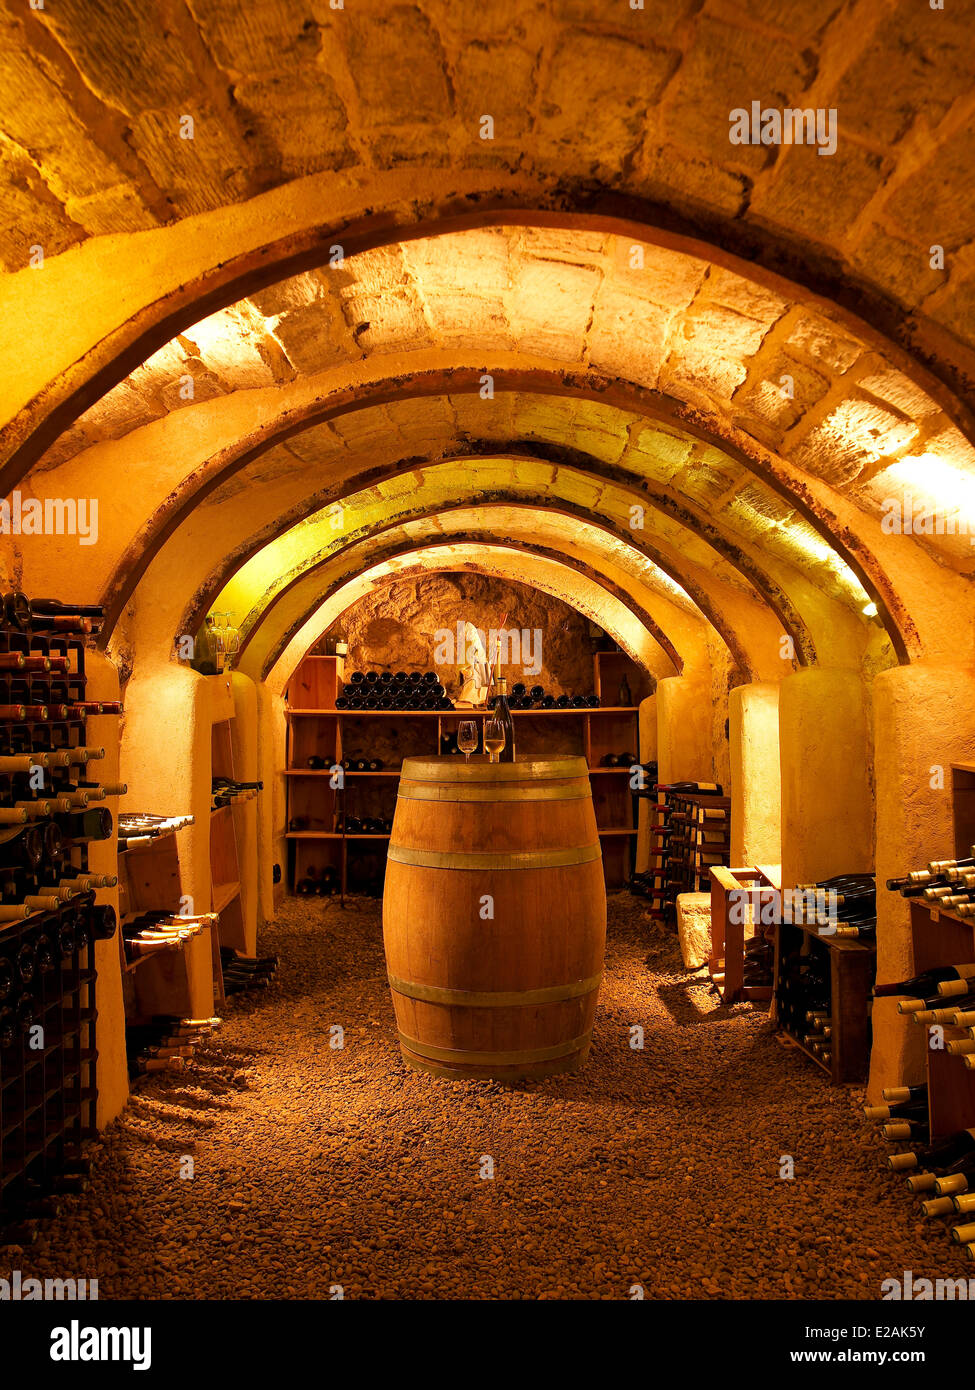 France, Indre et Loire, feature : The Big Tours, wine cellar restaurant Saint -Honore Stock Photo